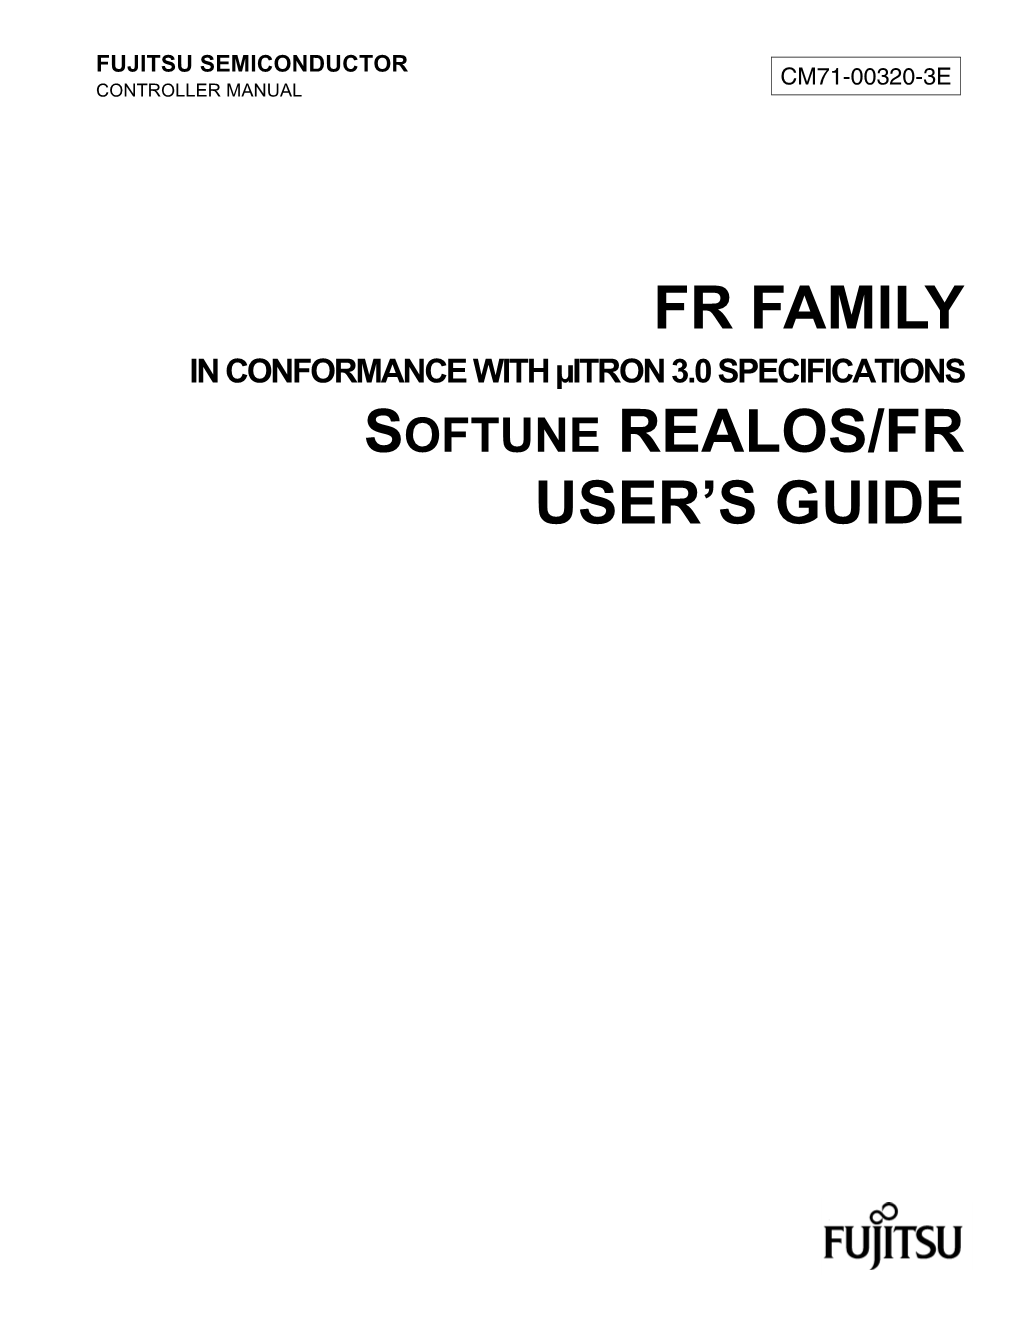 Fr Family Softune Realos/Fr User's Guide